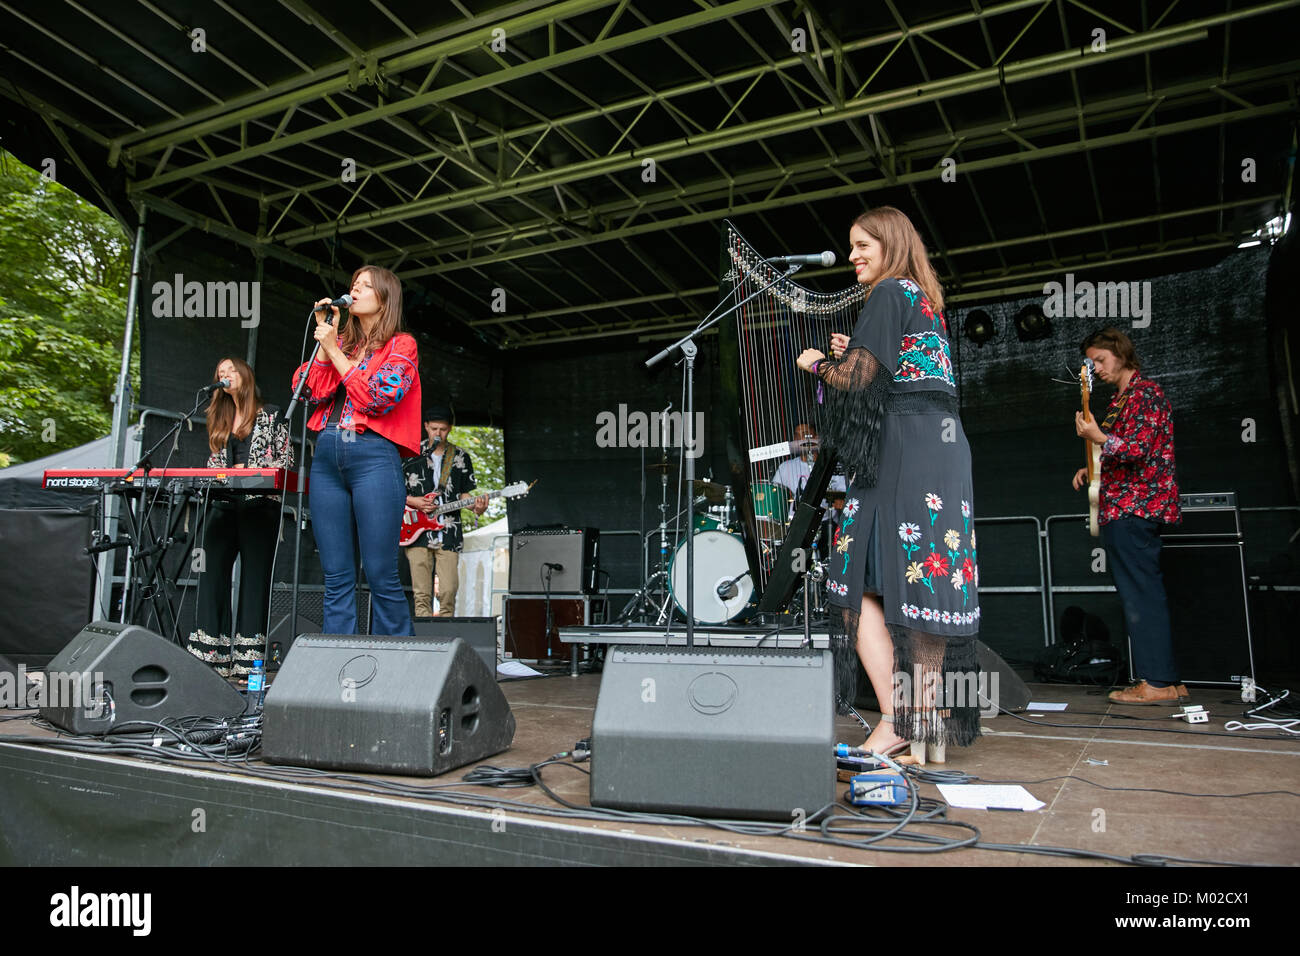 Le groupe britannique Paradisia effectue un concert live au cours de la fête de la musique norvégienne Piknik i Parken à Oslo. Chanteuse Sophie-Rose ici est vu sur scène avec Anna sur harpe et Kristy sur clavier. La Norvège, 22/06 2017. Banque D'Images